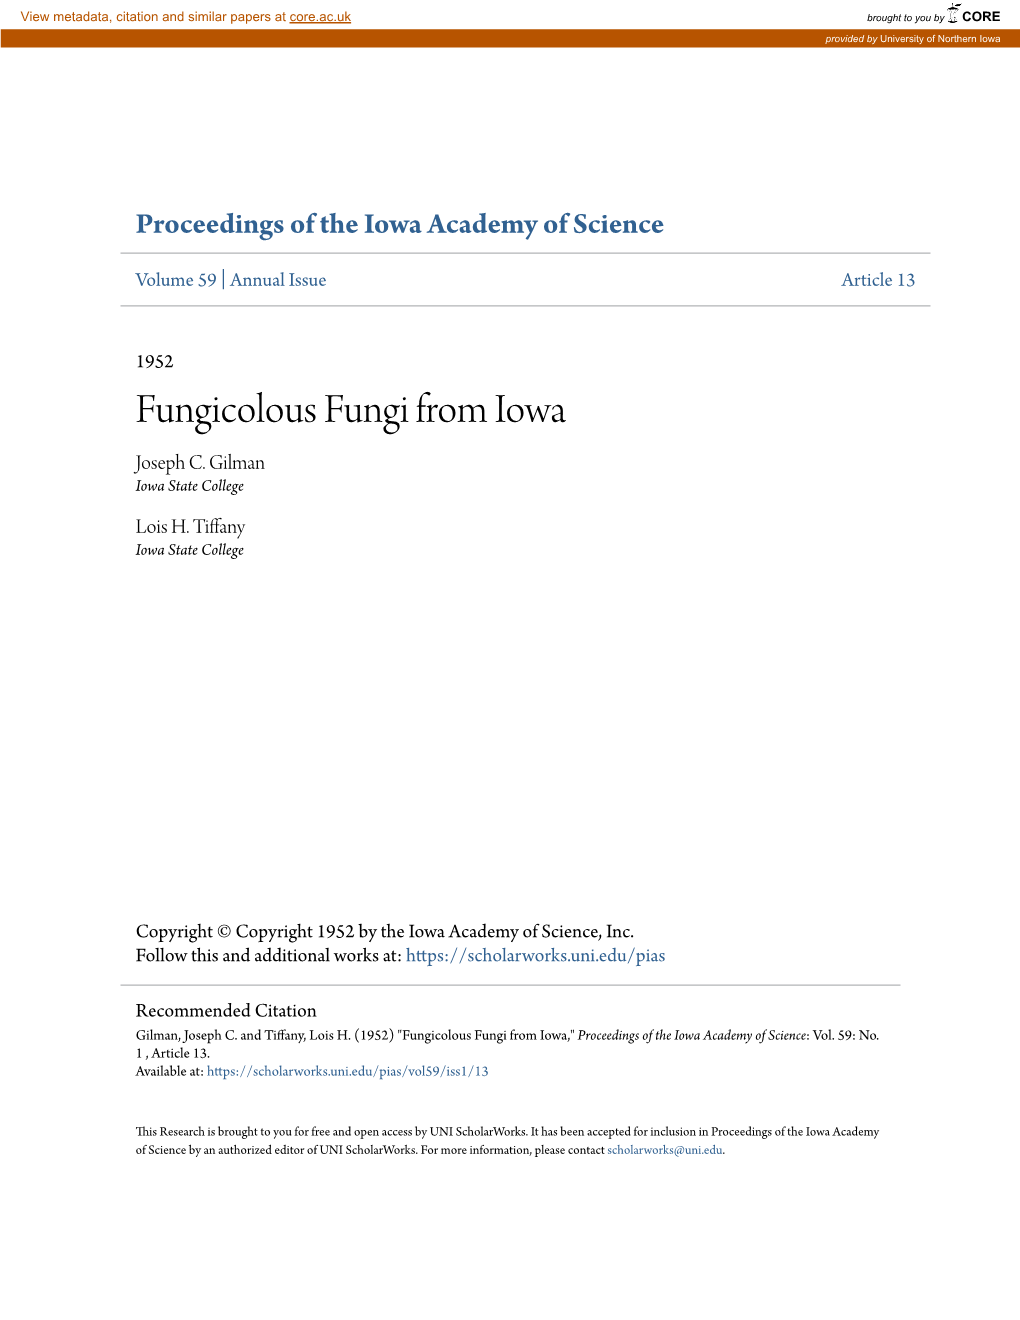 Fungicolous Fungi from Iowa Joseph C